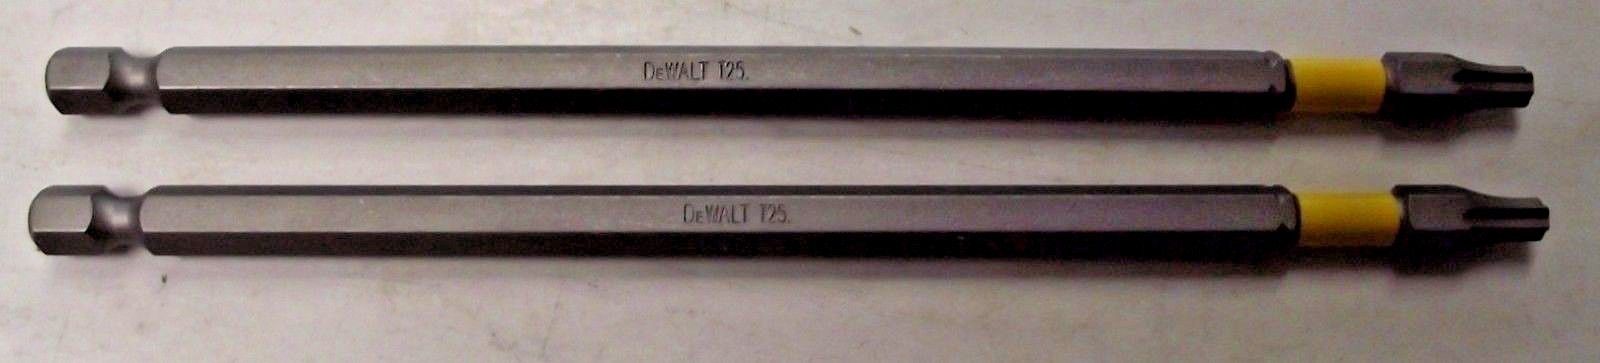 Dewalt DWA6TX T25 x 6" MAXFIT Torx Power Screw Bit Tip 2pcs